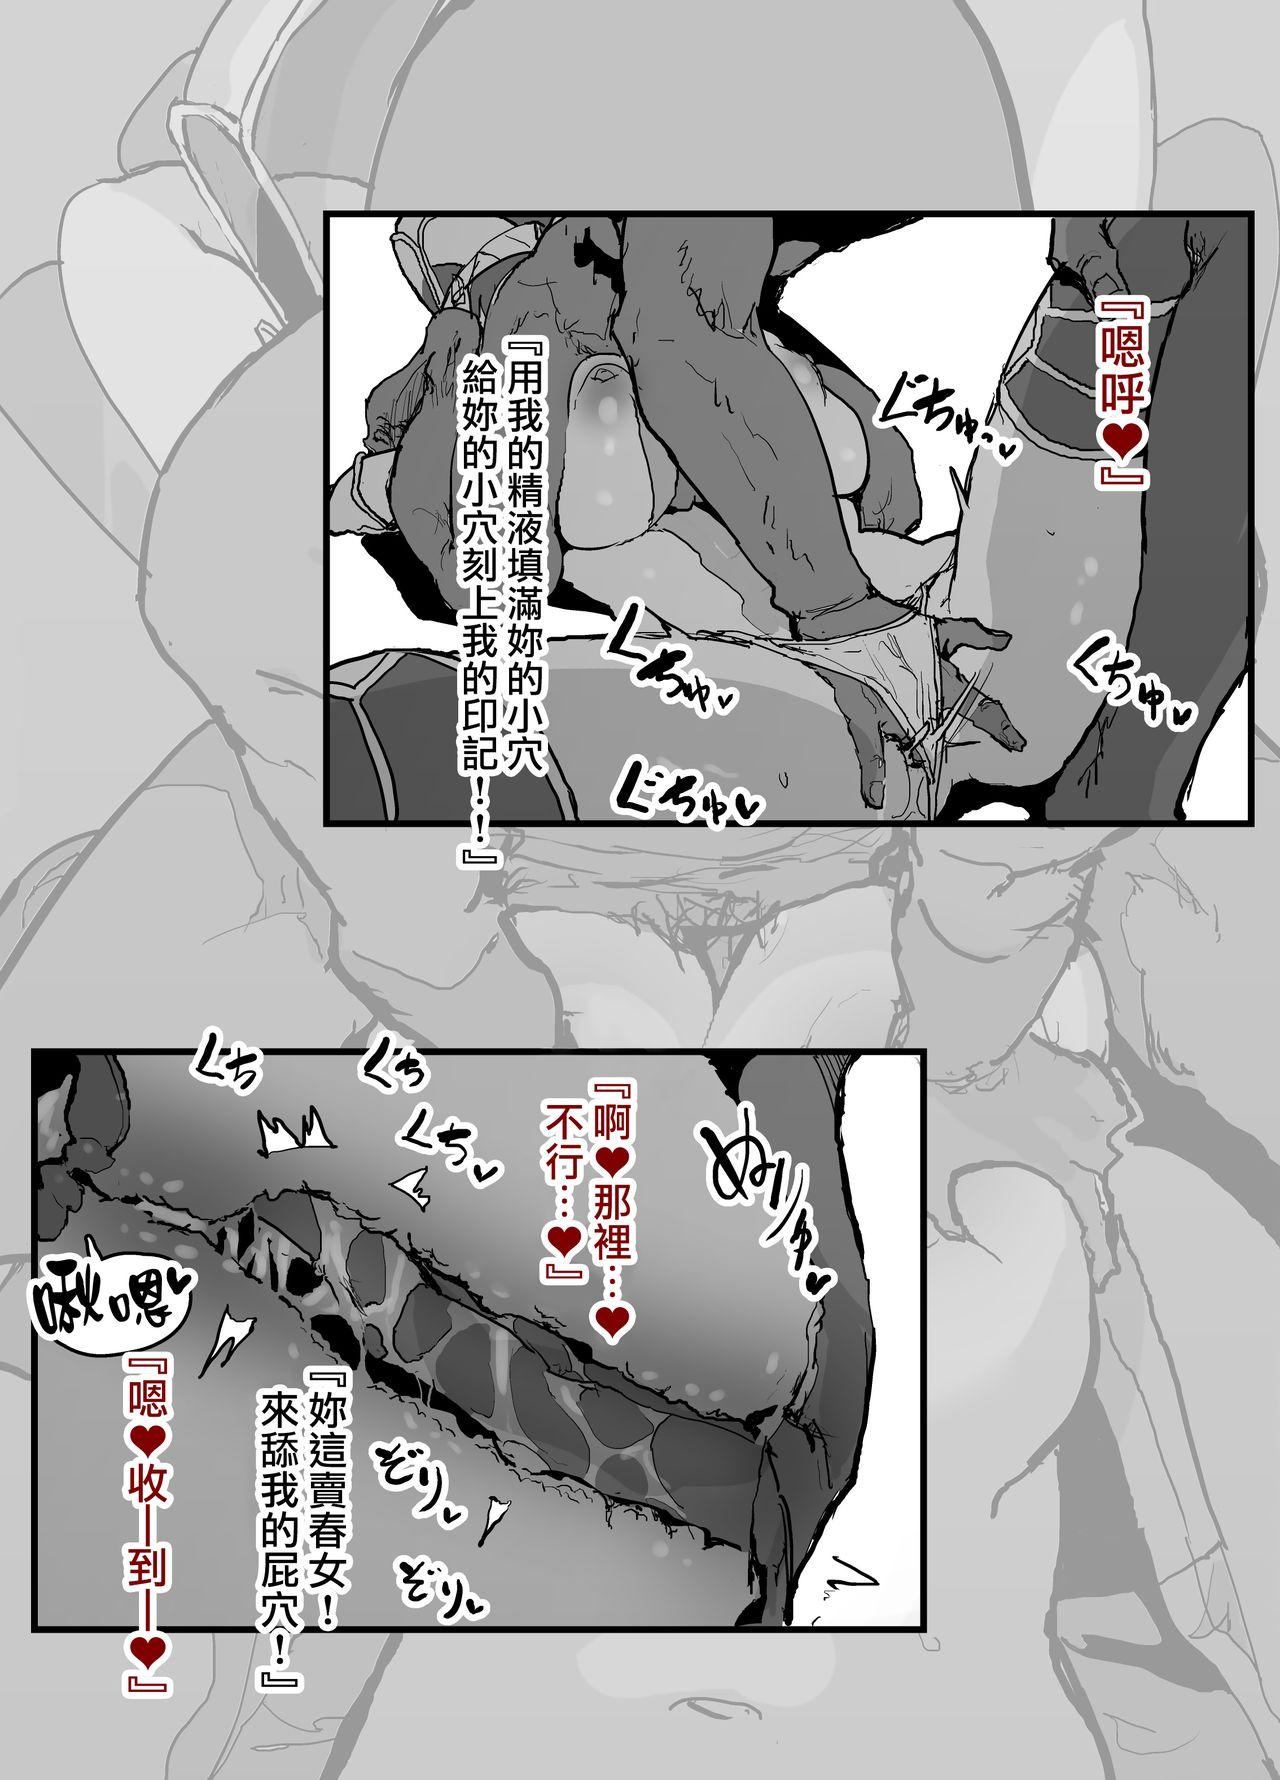 Gayfuck FGO Fuuzokuten 『S katagina xuanzang to 60bun ko-su』25000en~ - Fate grand order Price - Page 13